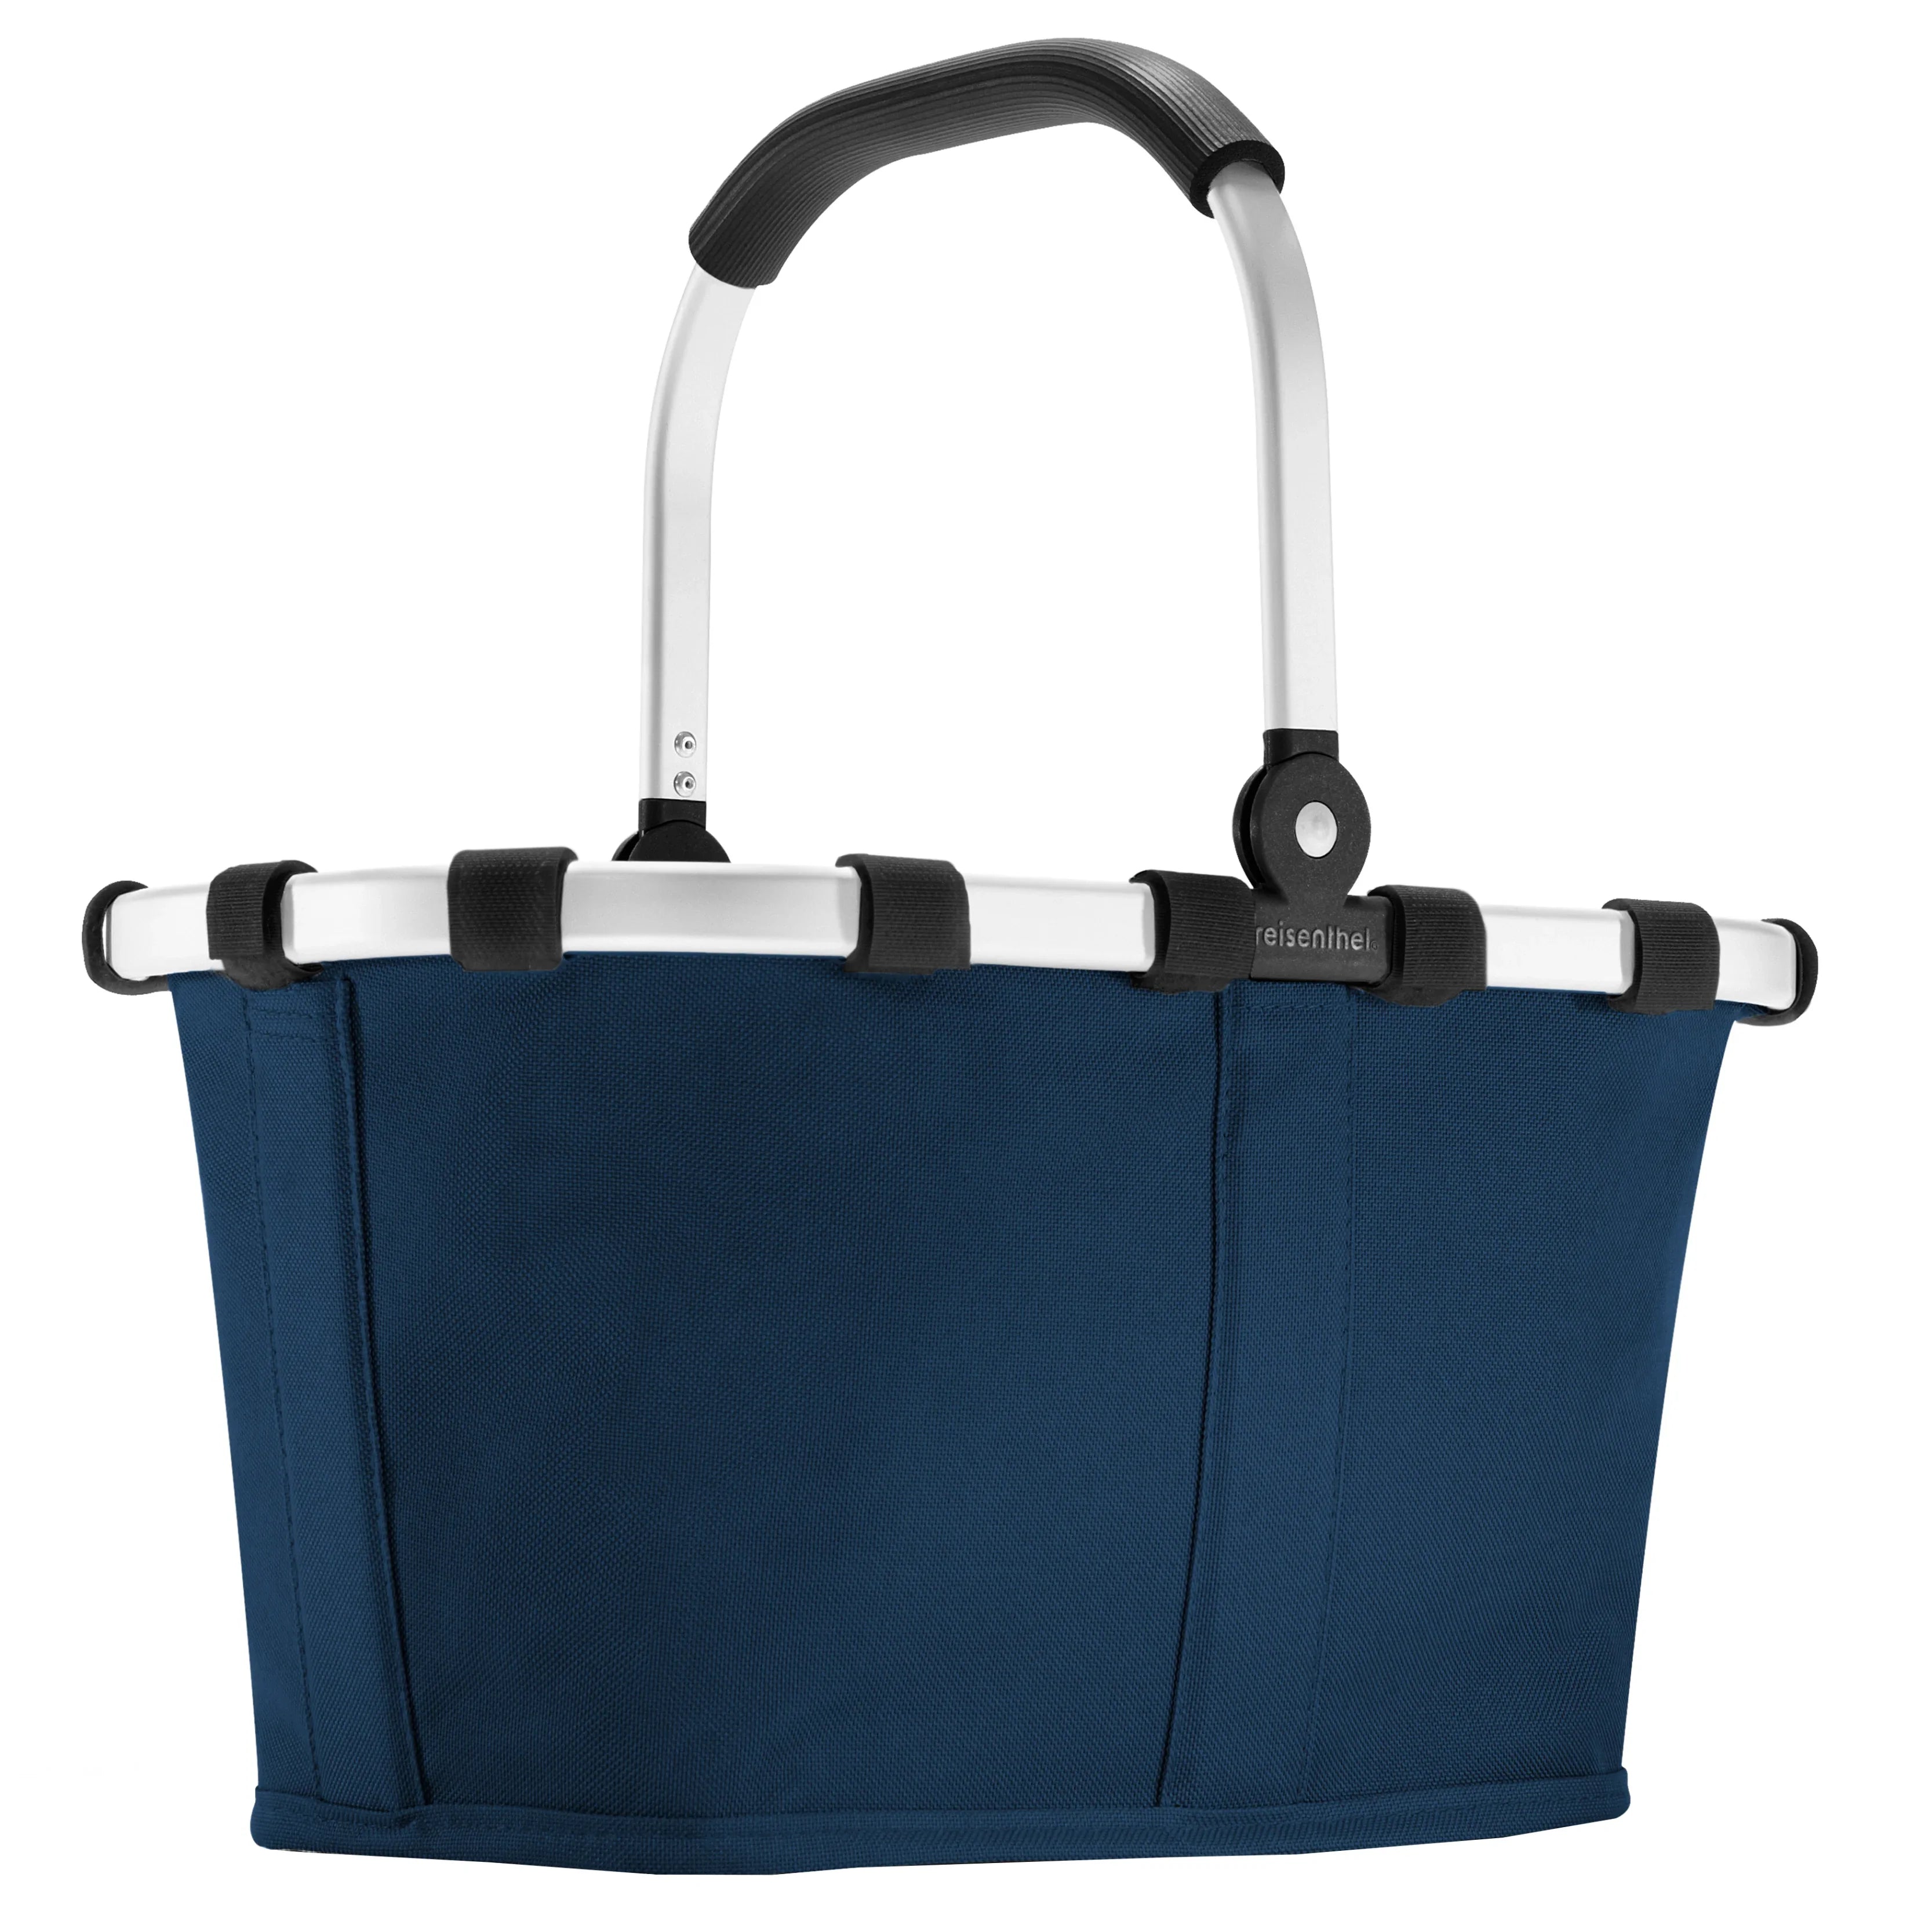 Reisenthel Shopping Carrybag XS panier de courses pour enfants 33 cm - bleu foncé